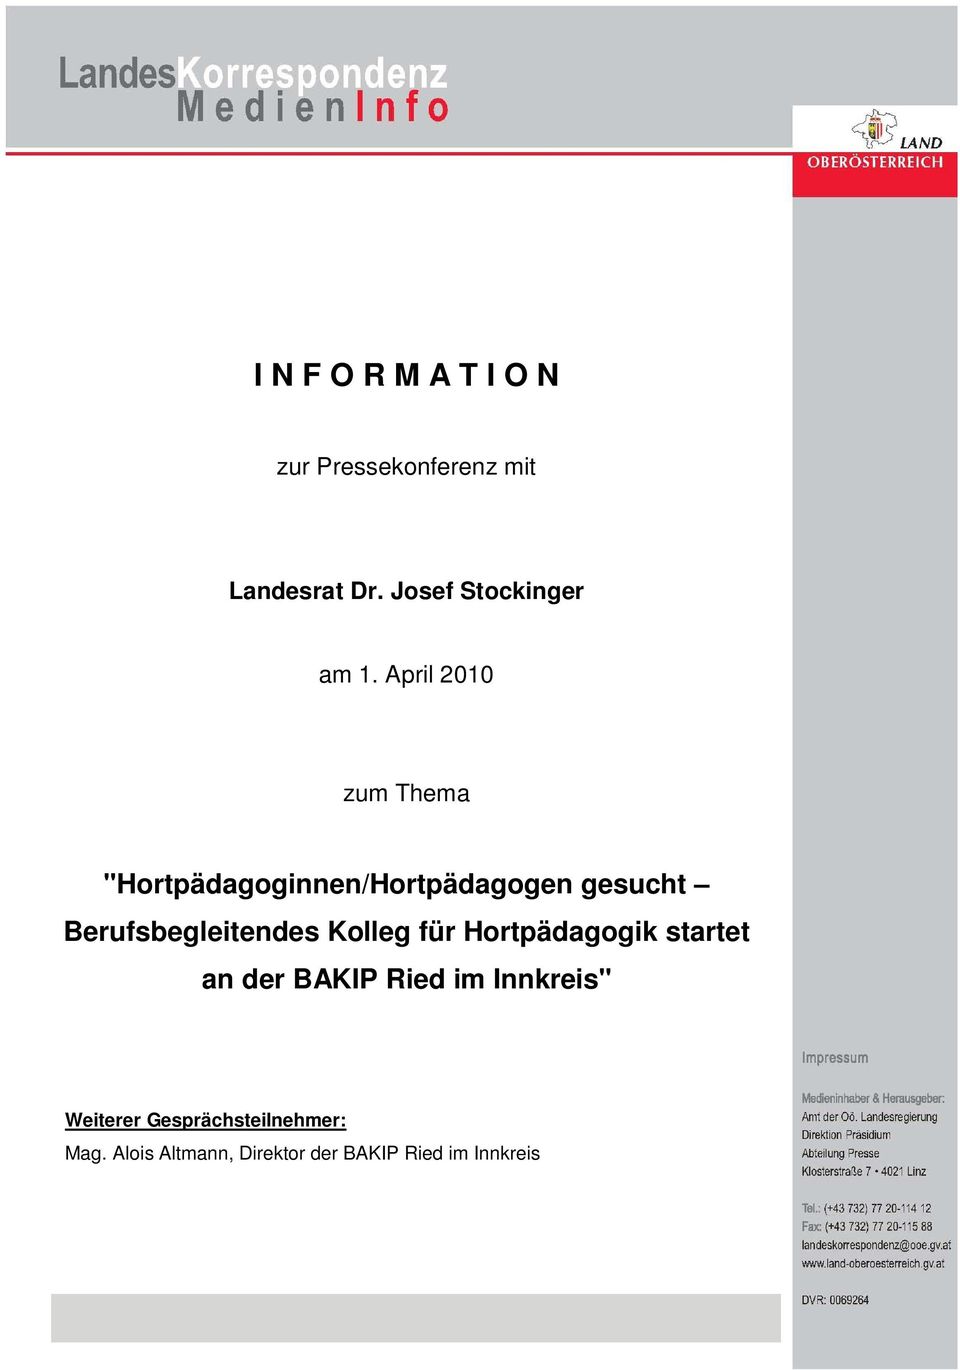 April 2010 zum Thema "Hortpädagoginnen/Hortpädagogen gesucht